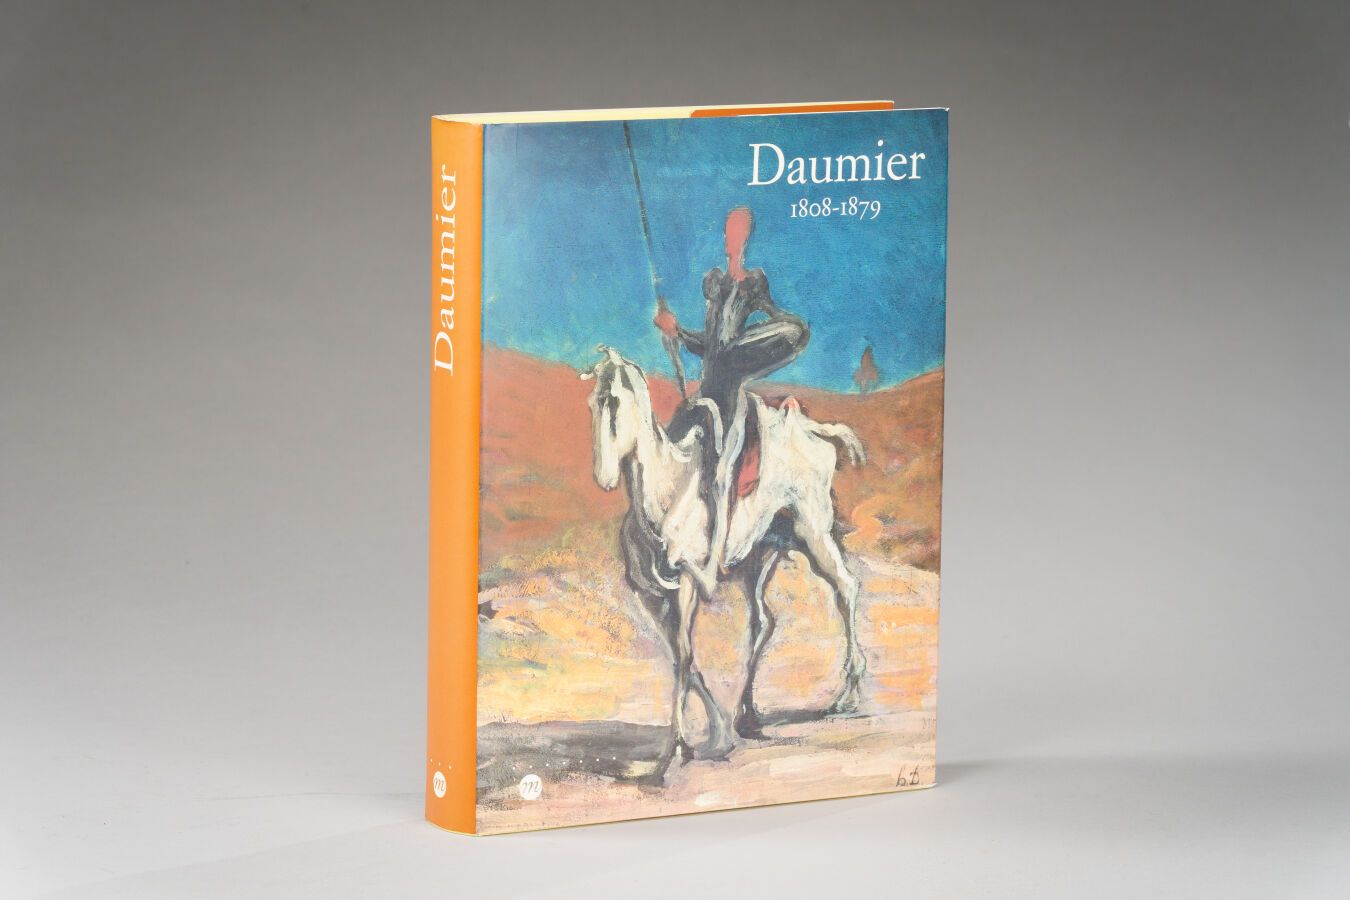 Null 5.DAUMIER, 1808-1879, Réunion des Musées

Nationaux, Paris 1999, 1 vol.